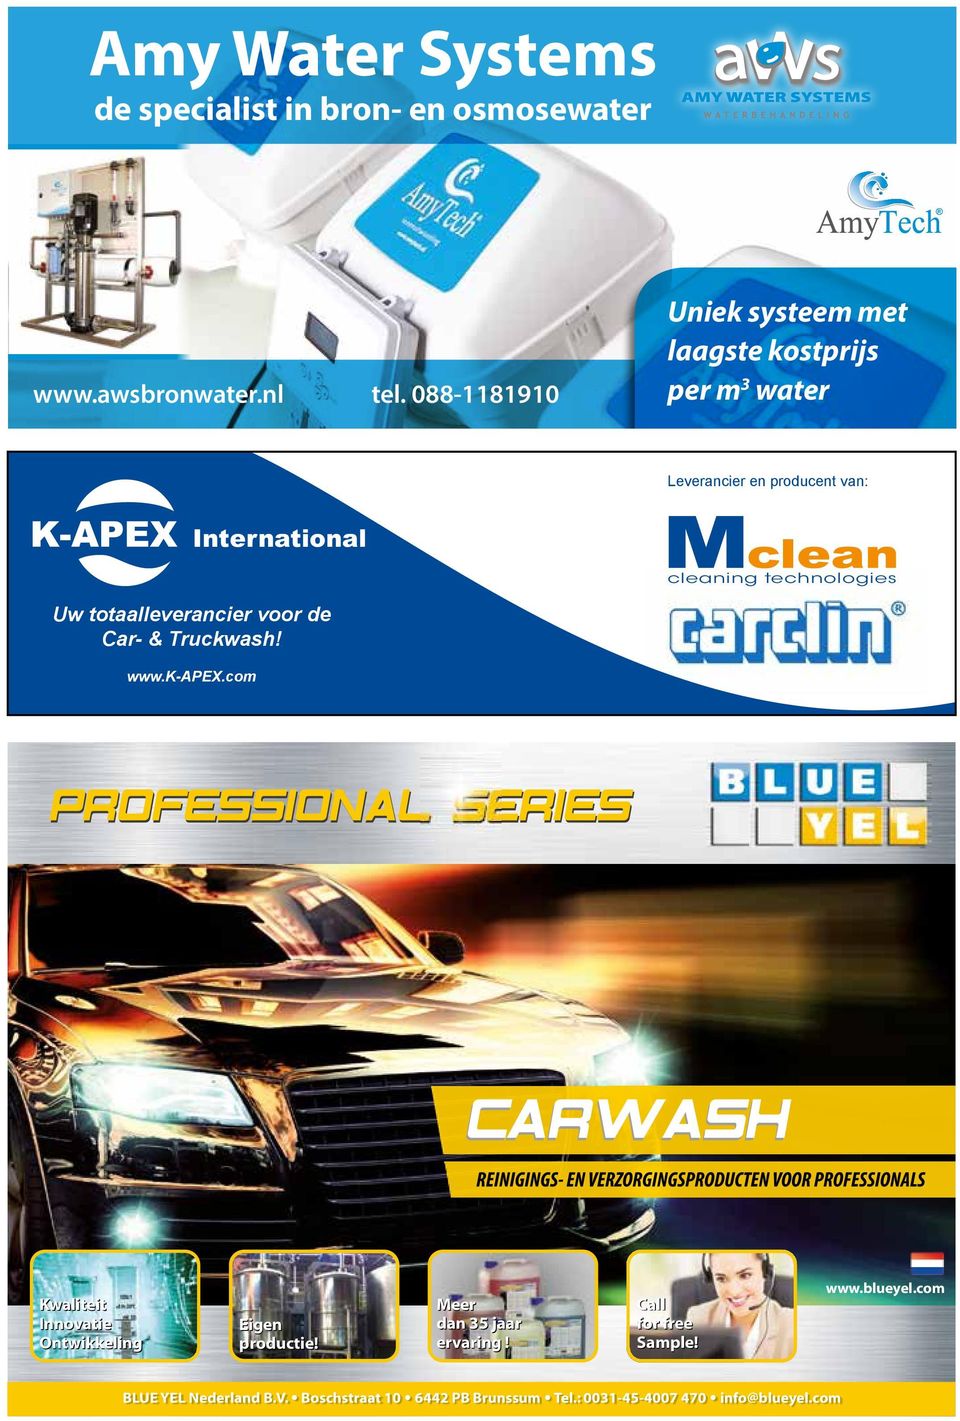 technologies Uw totaalleverancier voor de Car- & Truckwash! www.k-apex.